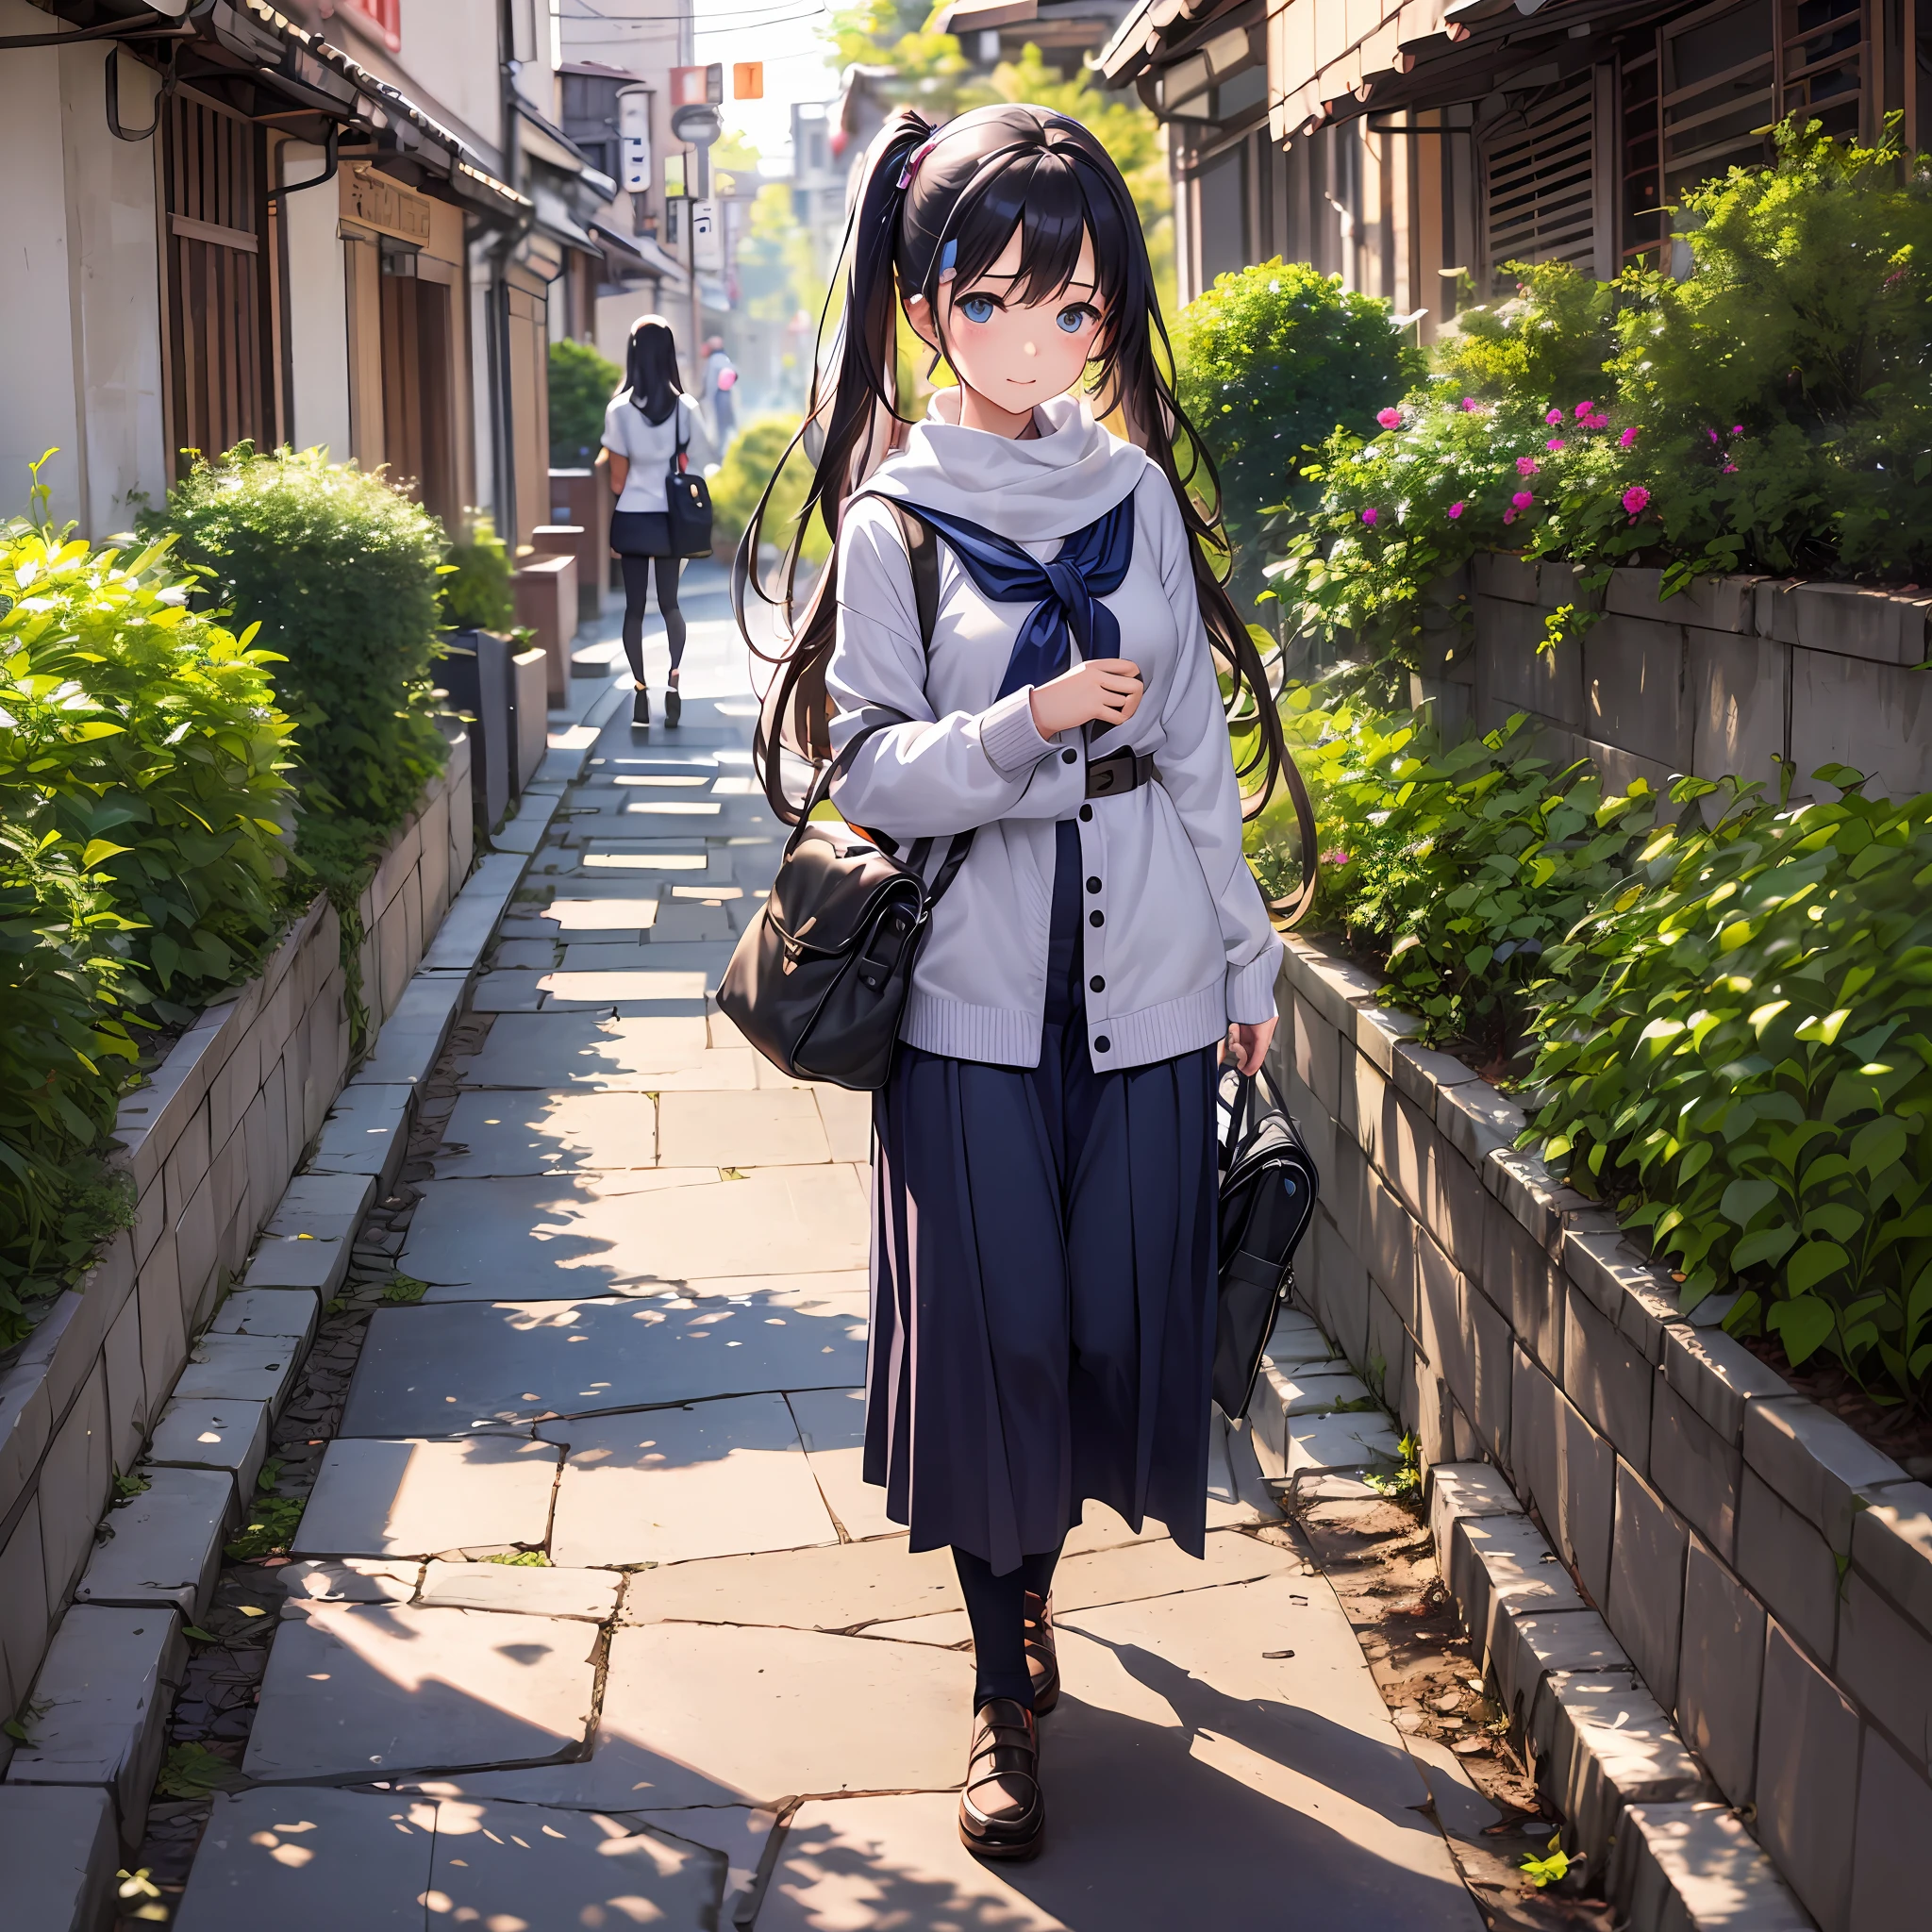 位于东京市中心, 19 歲的女孩阿雅踏上了改變人生的旅程——大學生活的第一天. 她的心因興奮和緊張而劇烈跳動, 她的眼神充滿了好奇, 阿雅的魅力反映了她靈魂中充滿的期待和決心.

當她穿梭於繁華的城市街道時, 東京似乎是個充滿機會的迷人迷宮. 充滿活力的城市景觀, 傳統與現代的融合, 她周圍充滿了能量和目標感.

抵達大學校園, 阿雅受到了一群陌生面孔的歡迎. 然而, 當她意識到每個人都在同一條船上時，一股溫暖擁抱著她——他們的學術之旅有了新的開始.

走進報告廳, 阿雅感到一陣興奮. 寬敞的房間裡充滿了新書和知識的香氣，吸引她沉浸在等待的每一次體驗中。. 她邁出的每一步都讓她更接近她渴望成為的人.

教授的話就像一首智慧的交響曲, 激勵阿雅透過新的視角看世界. 對知識的追求點燃了她內心的火花, 當她急切地吸收每一個字時, 她的好奇心隨著時間的流逝而增長.

休息期間, 阿雅發現自己周圍都是友善的臉孔. 談話像溫柔的溪流一樣流淌, 當她與分享她的熱情和夢想的同學建立聯繫時. 友誼的感覺緩和了她最初的緊張, 營造一種支持與歸屬感的氛圍.

課外, 阿雅探索了廣闊的校園, 發現隱藏的地點和寧靜的花園，在那裡她可以在城市的活力中找到慰藉. 校園成了她的避難所, 一個她可以反思的地方, 儲值, 並擁抱她的夢想.

在晚上, 當她回到宿舍的時候, 她與來自不同背景的室友建立了聯繫, 了解他們的文化並分享他們家鄉的故事.